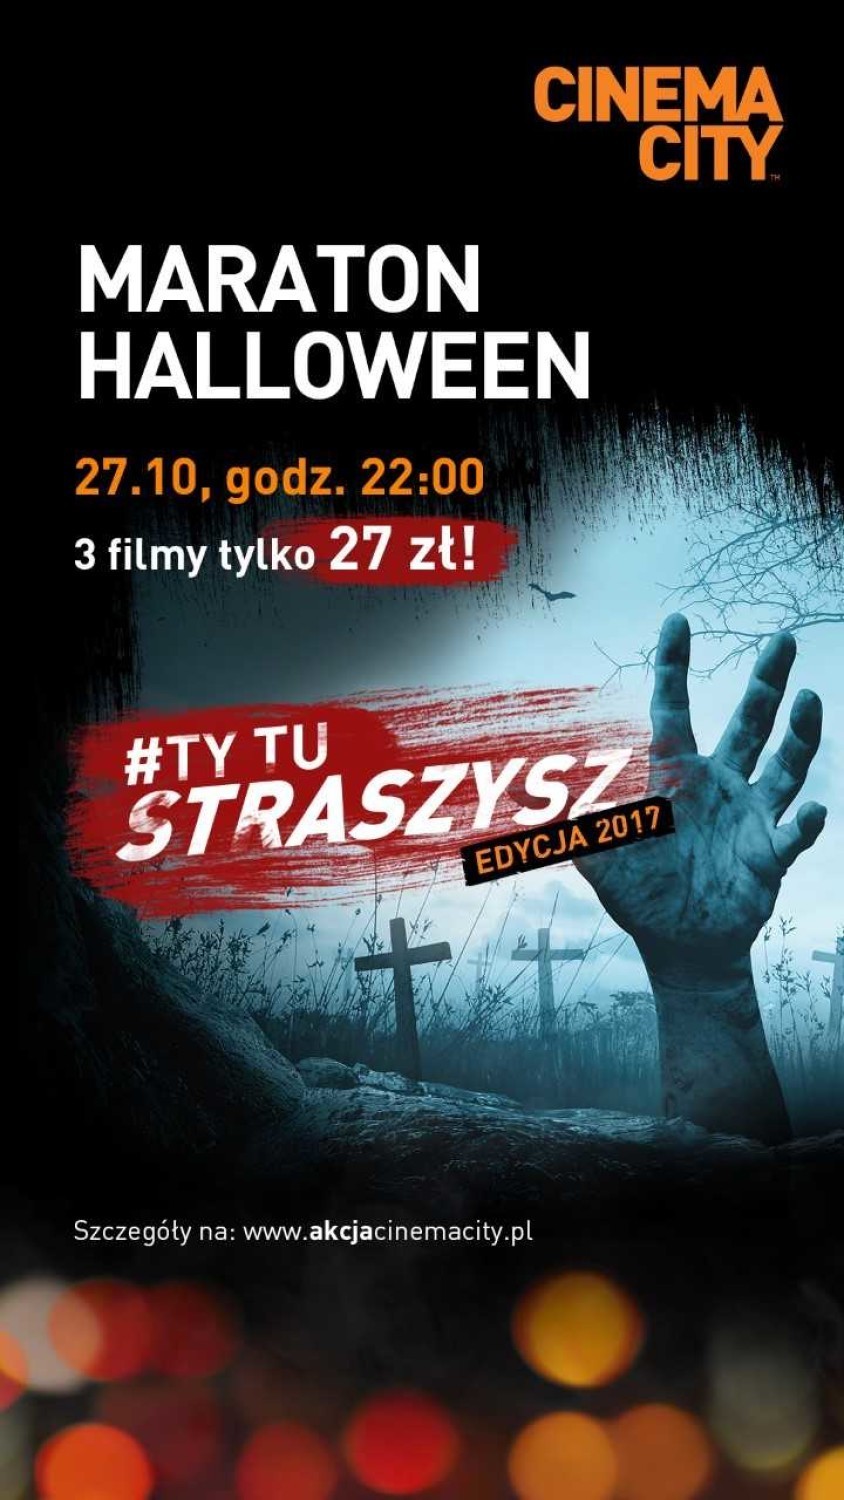 Gdańsk, 27 października - kino Cinema City

Nie masz odwagi...